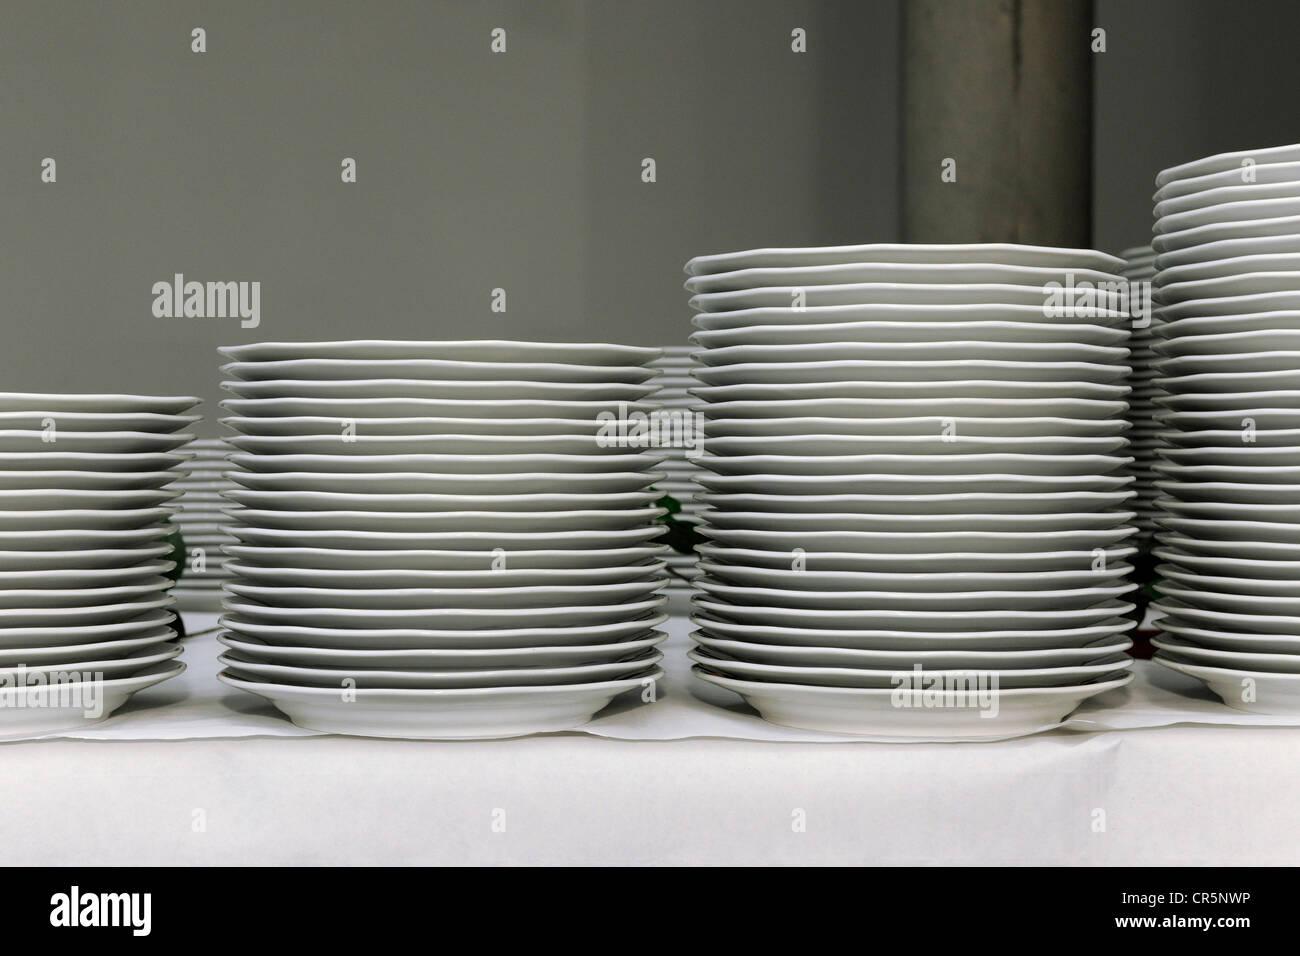 Des piles d'assiettes blanches sur une table, la préparation d'un événement d'entreprise, Thuringe, Allemagne, Europe Banque D'Images